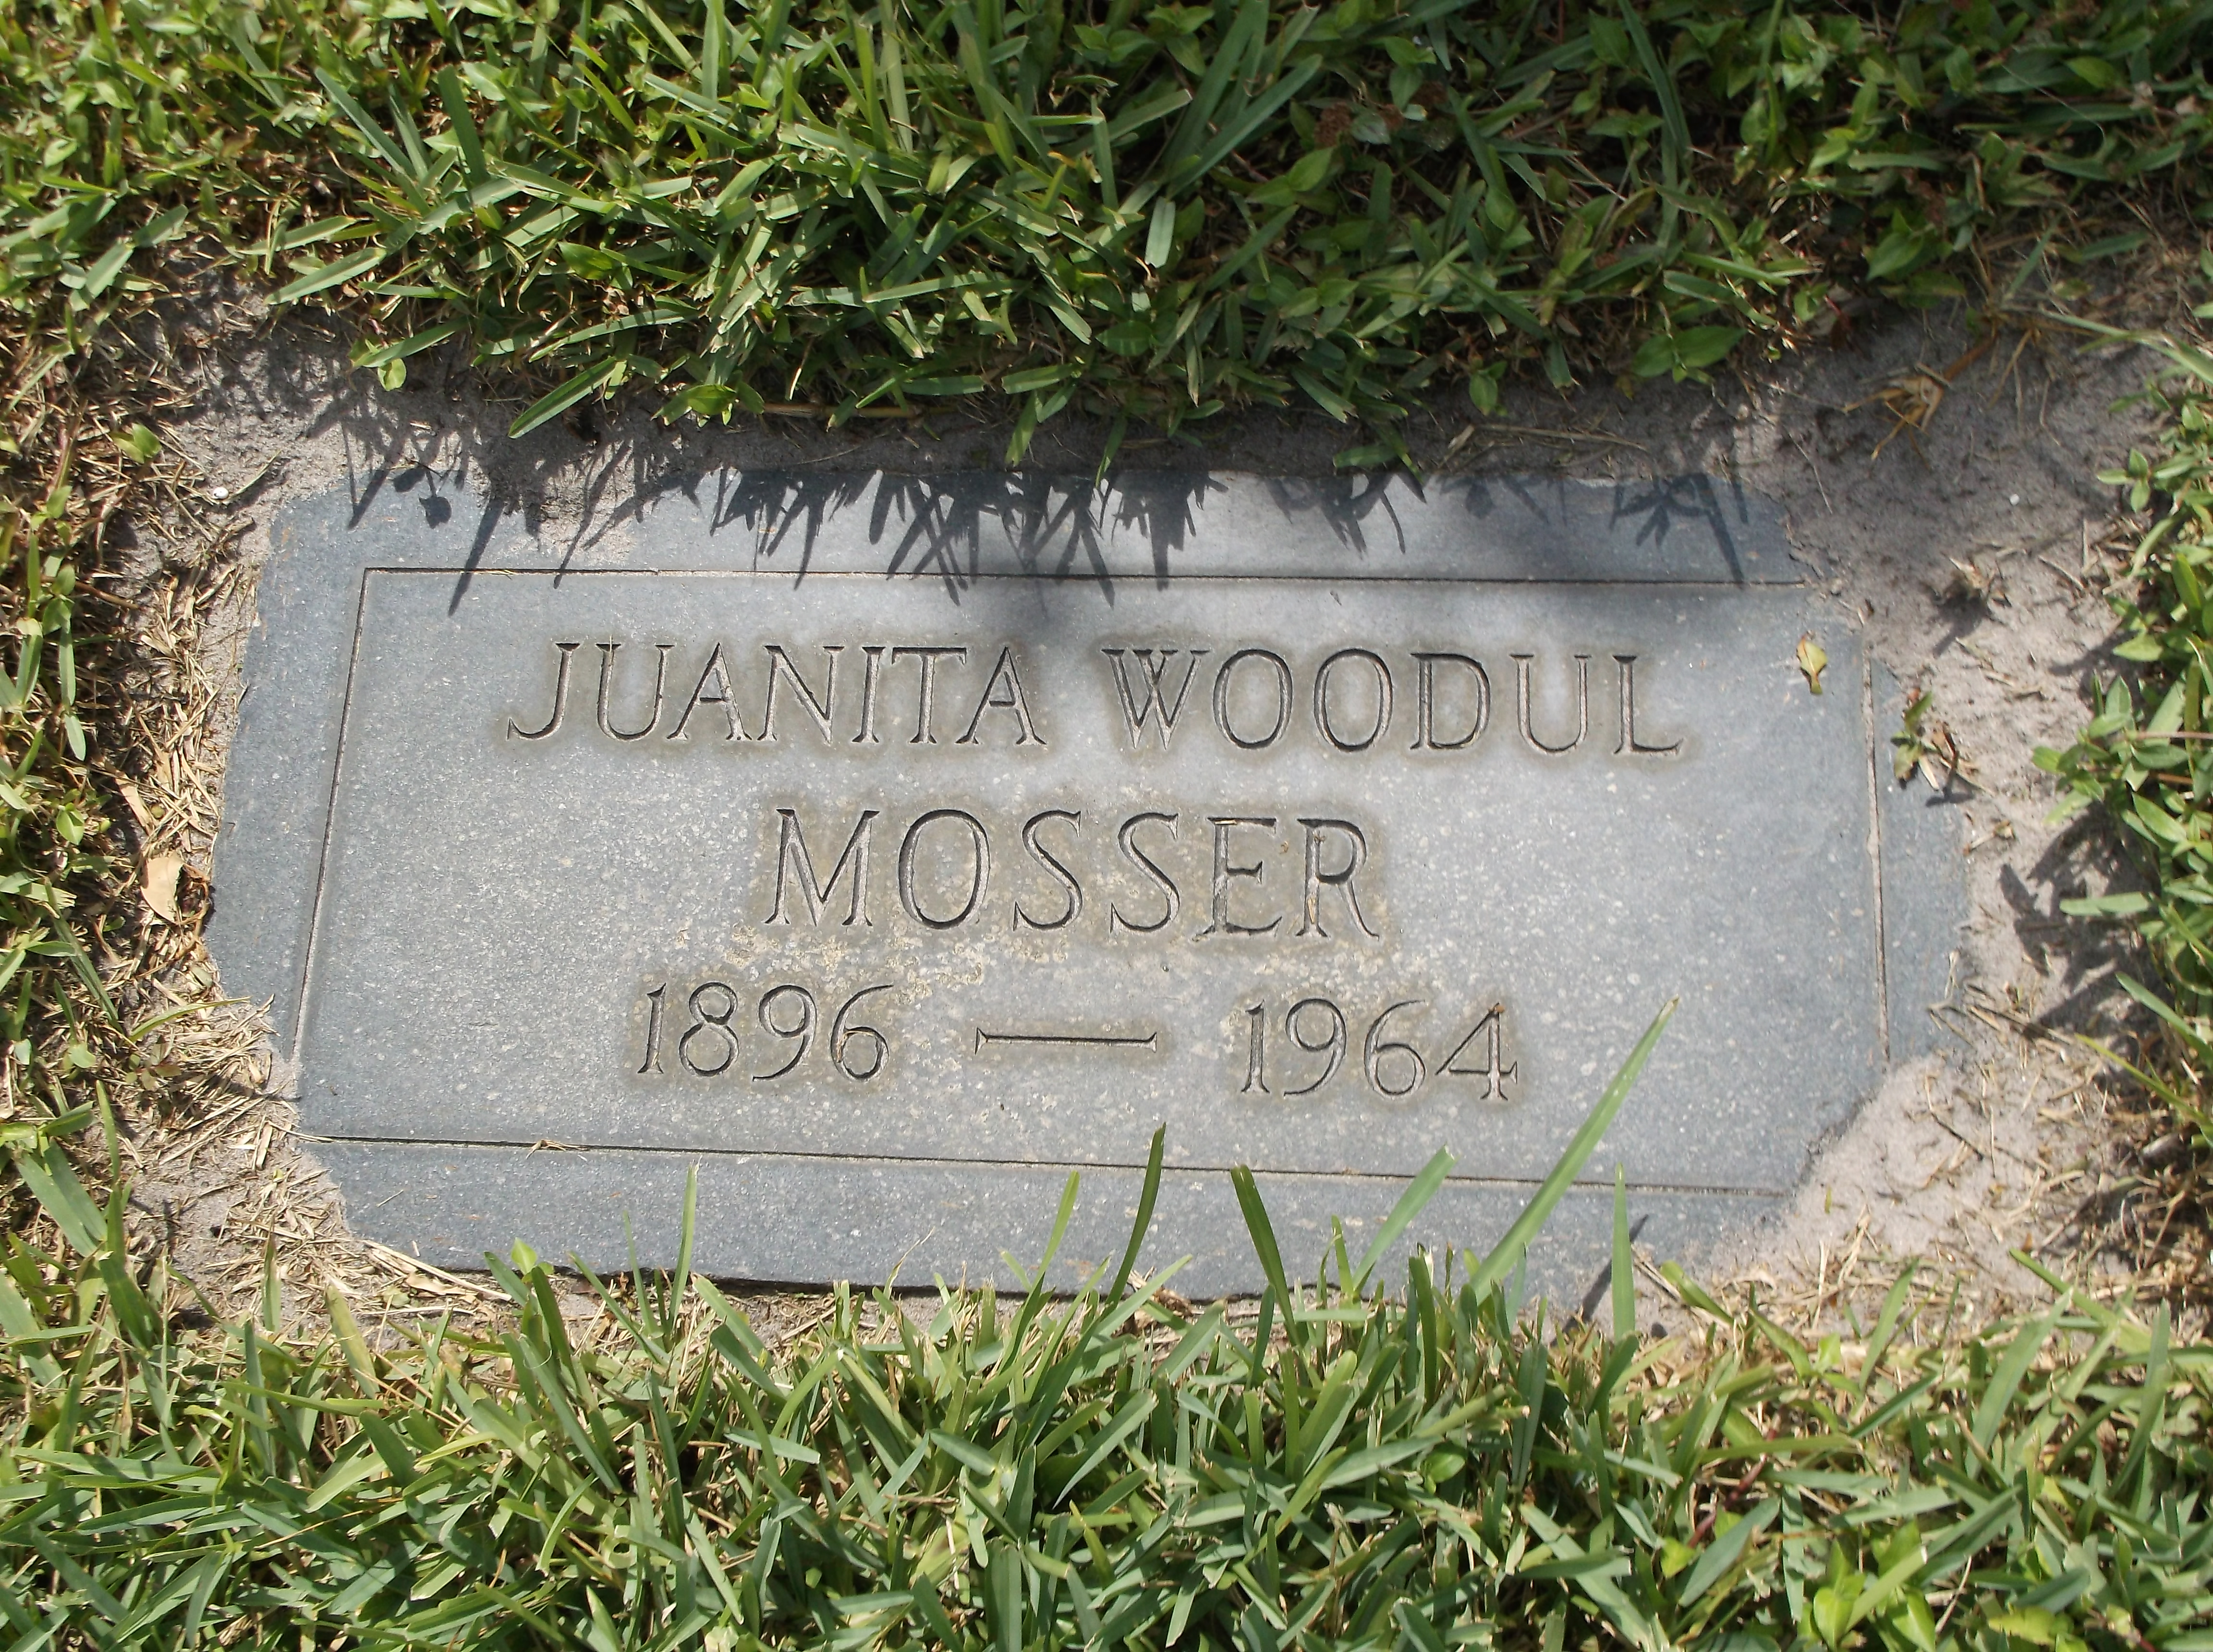 Juanita Woodul Mosser